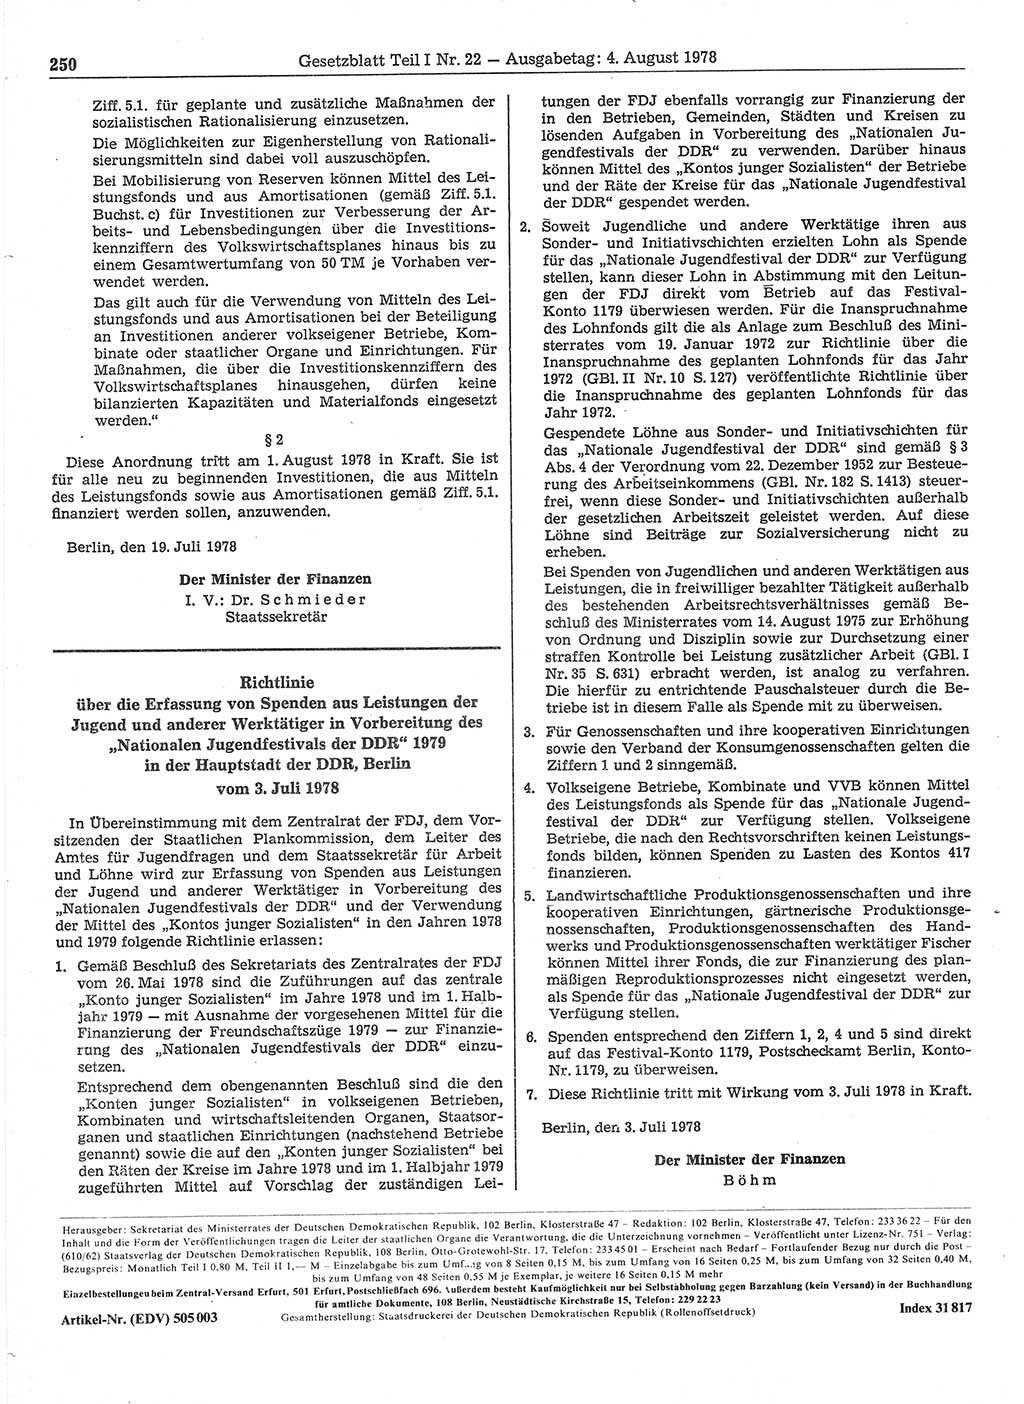 Gesetzblatt (GBl.) der Deutschen Demokratischen Republik (DDR) Teil Ⅰ 1978, Seite 250 (GBl. DDR Ⅰ 1978, S. 250)